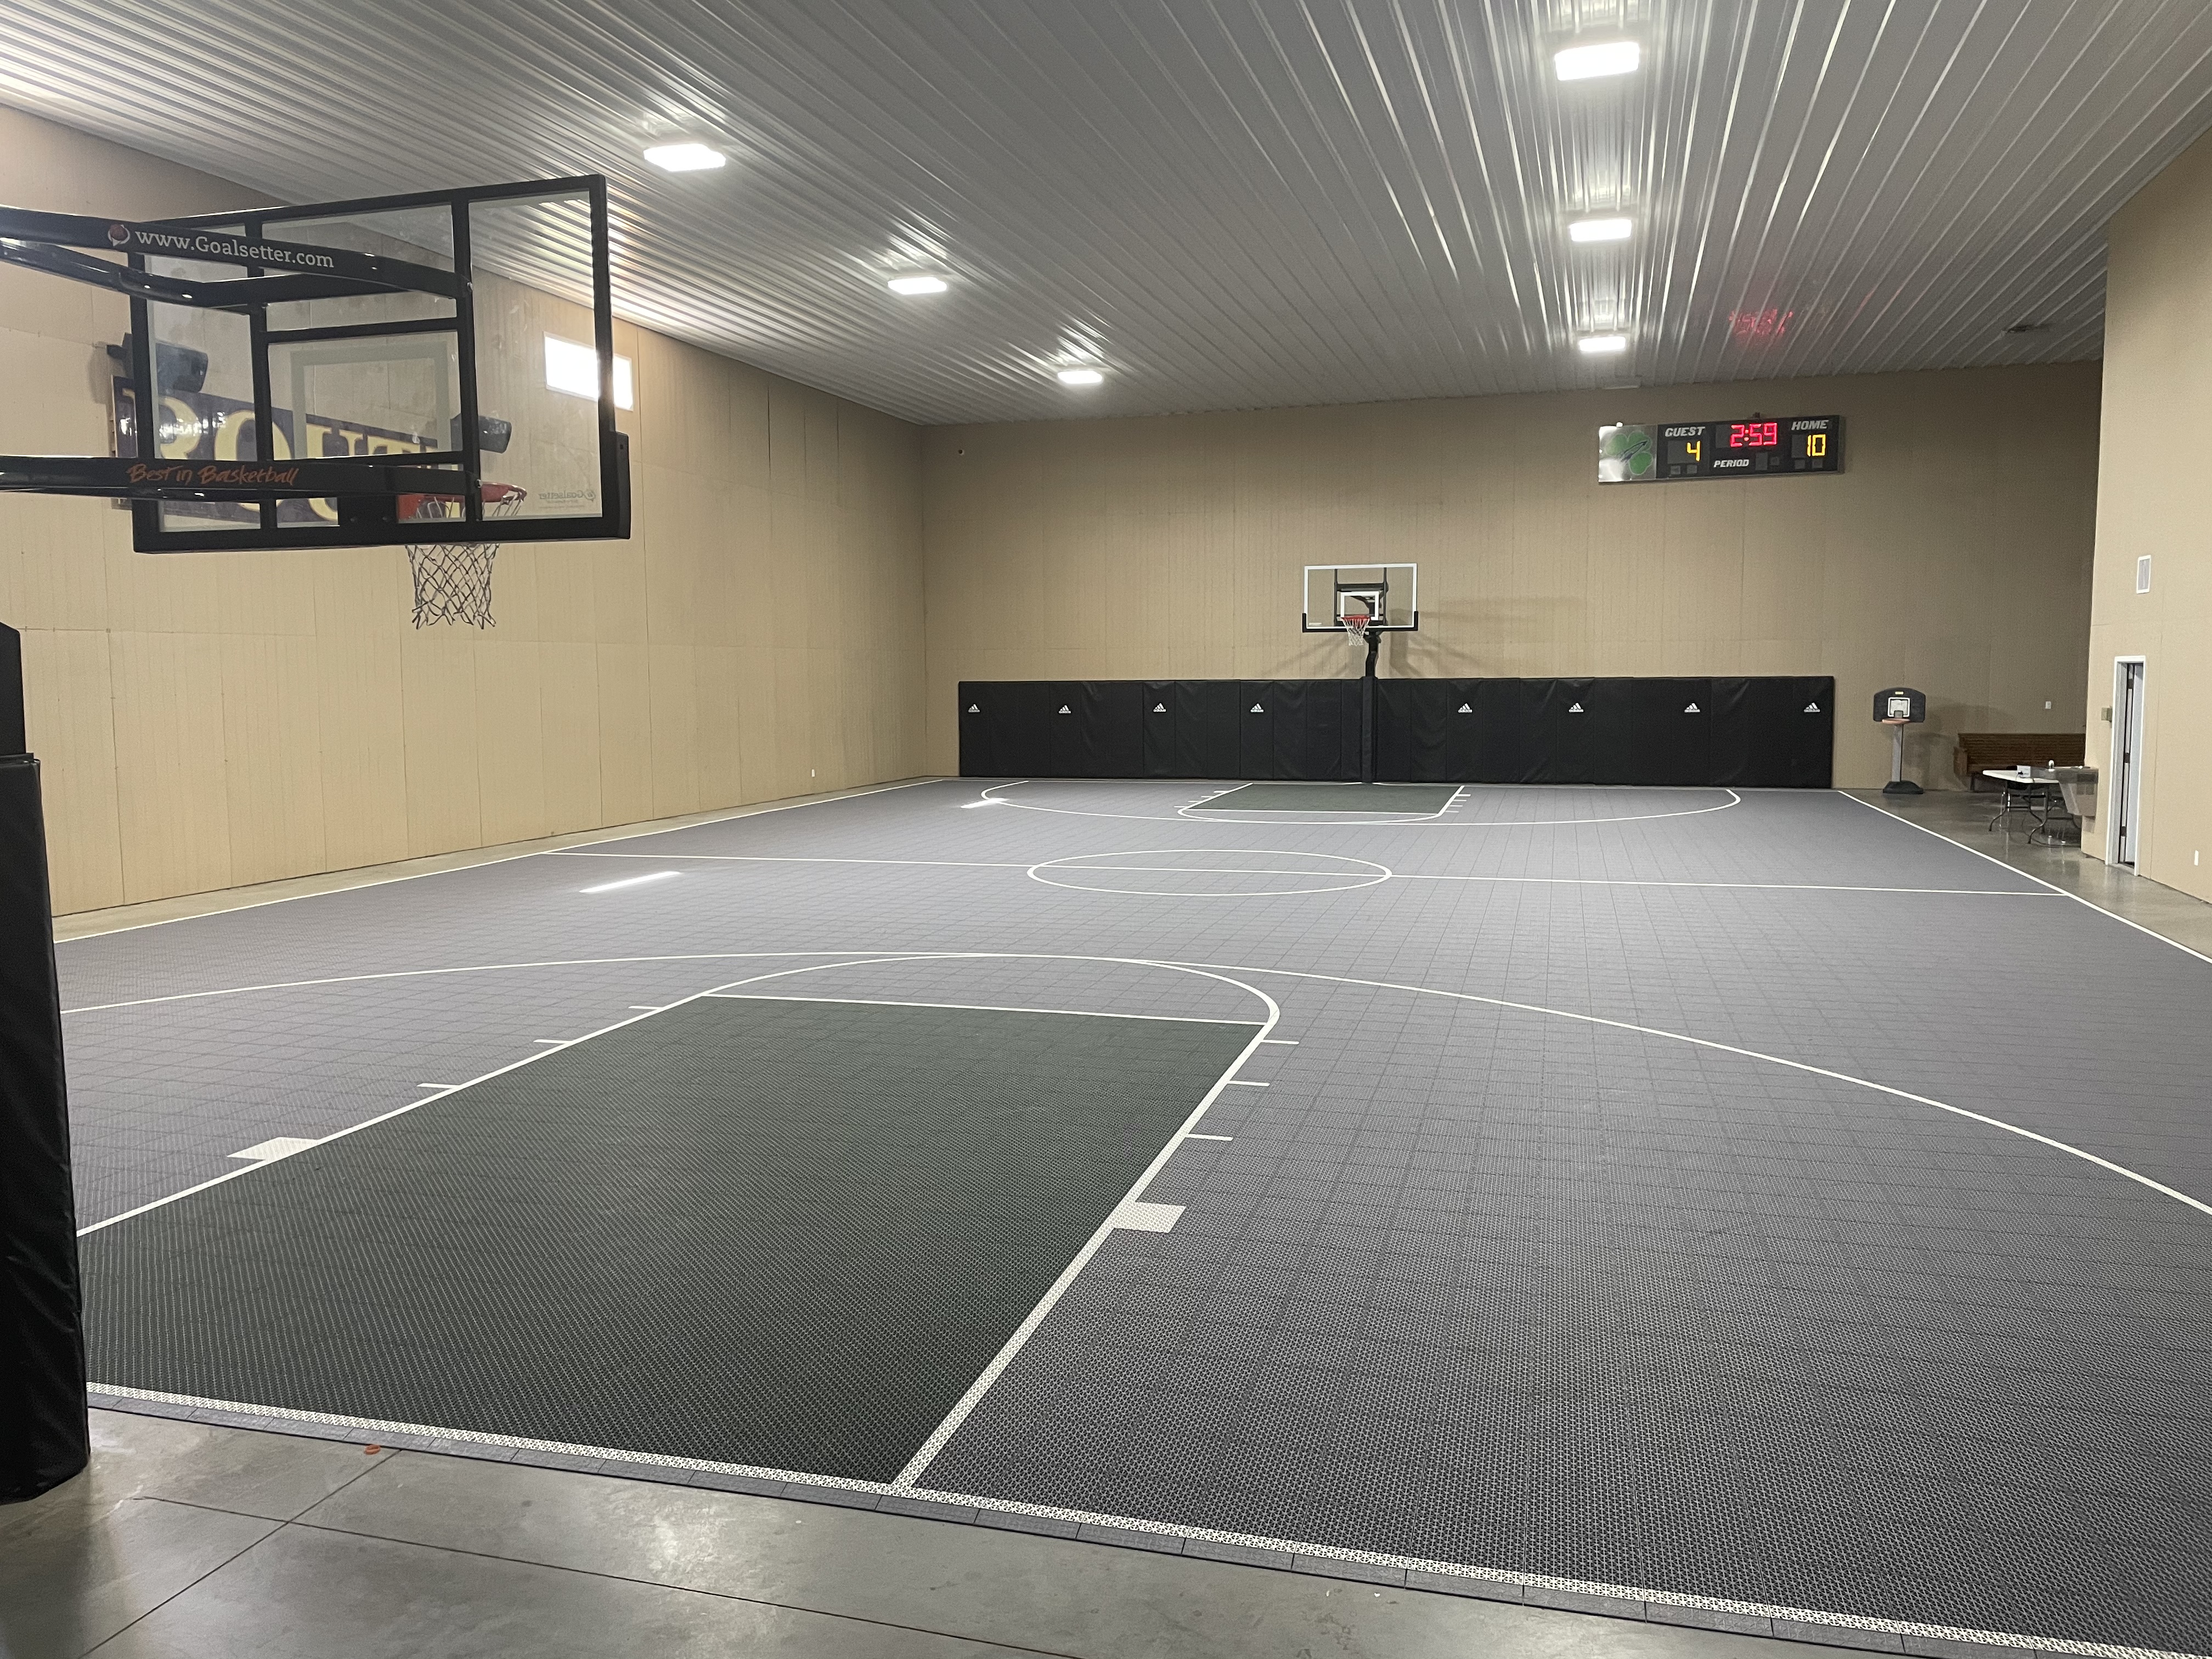 Terrain de basket-ball complet, salle de réception + loft pour 17 personnes  - Granges à louer à Jacksonville, Illinois, États-Unis - Airbnb